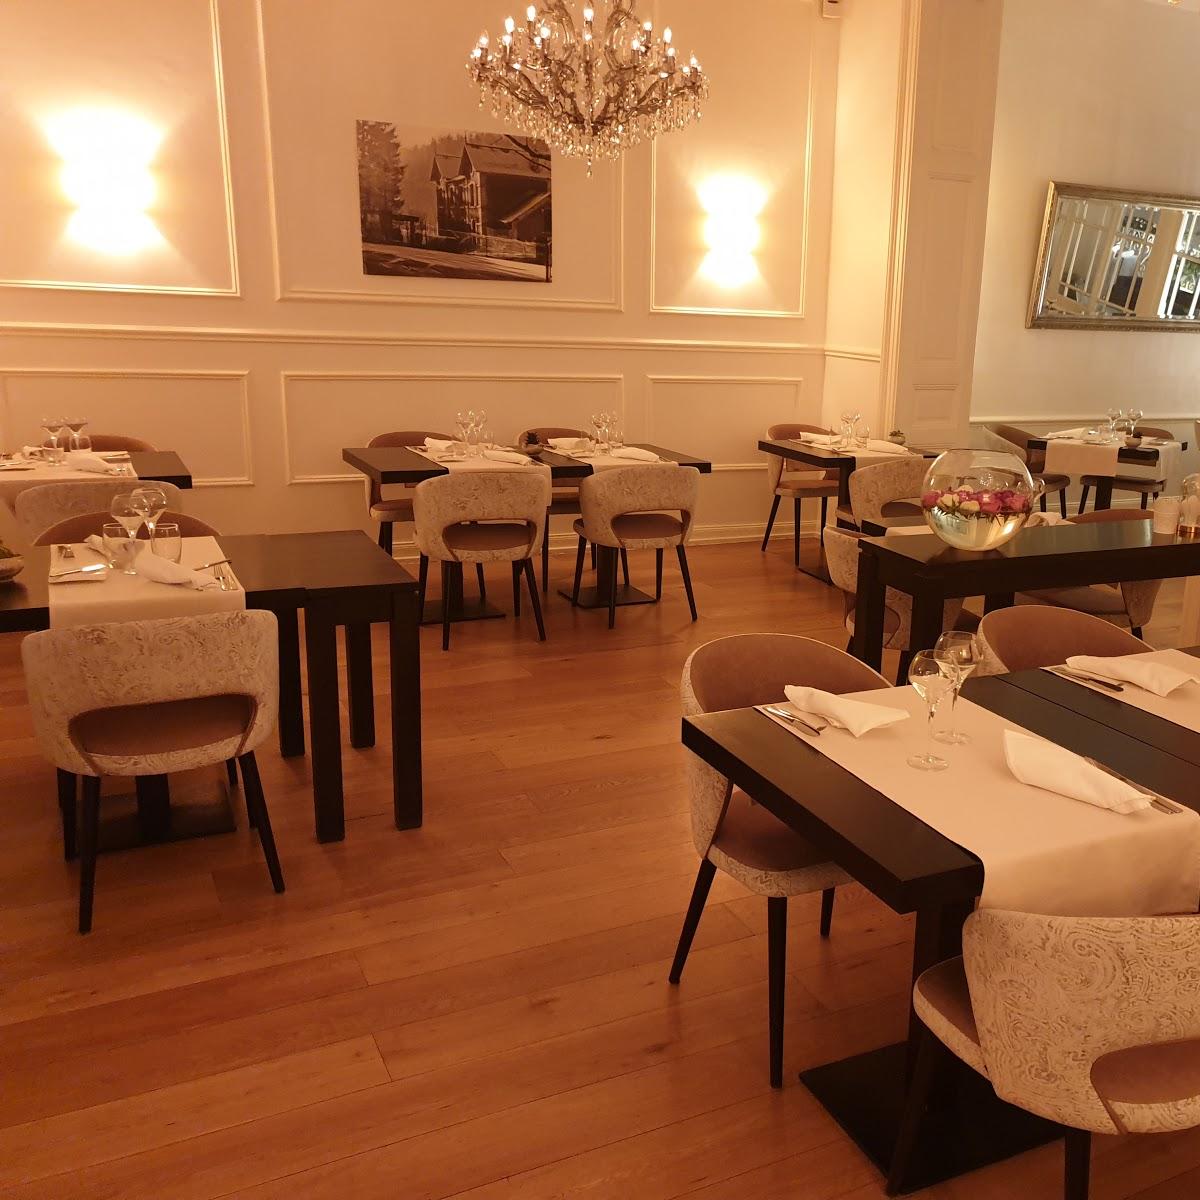 Restaurant "La Maison Lefevre" in Esch-sur-Alzette